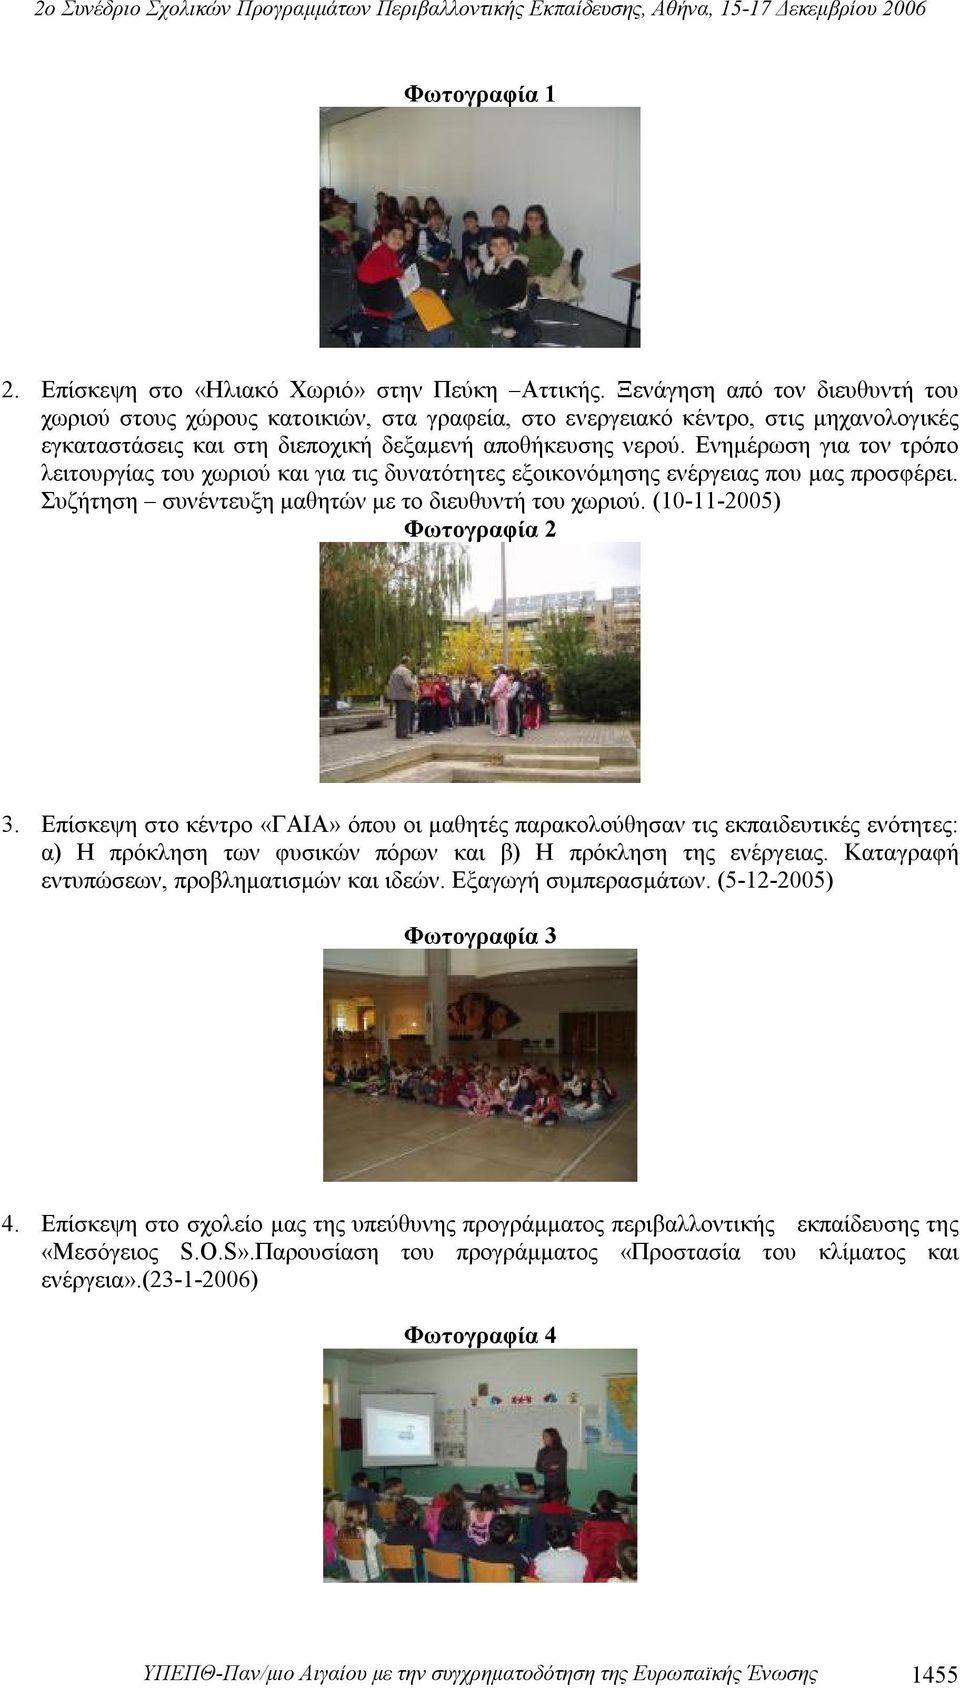 Ενημέρωση για τον τρόπο λειτουργίας του χωριού και για τις δυνατότητες εξοικονόμησης ενέργειας που μας προσφέρει. Συζήτηση συνέντευξη μαθητών με το διευθυντή του χωριού. (10-11-2005) Φωτογραφία 2 3.